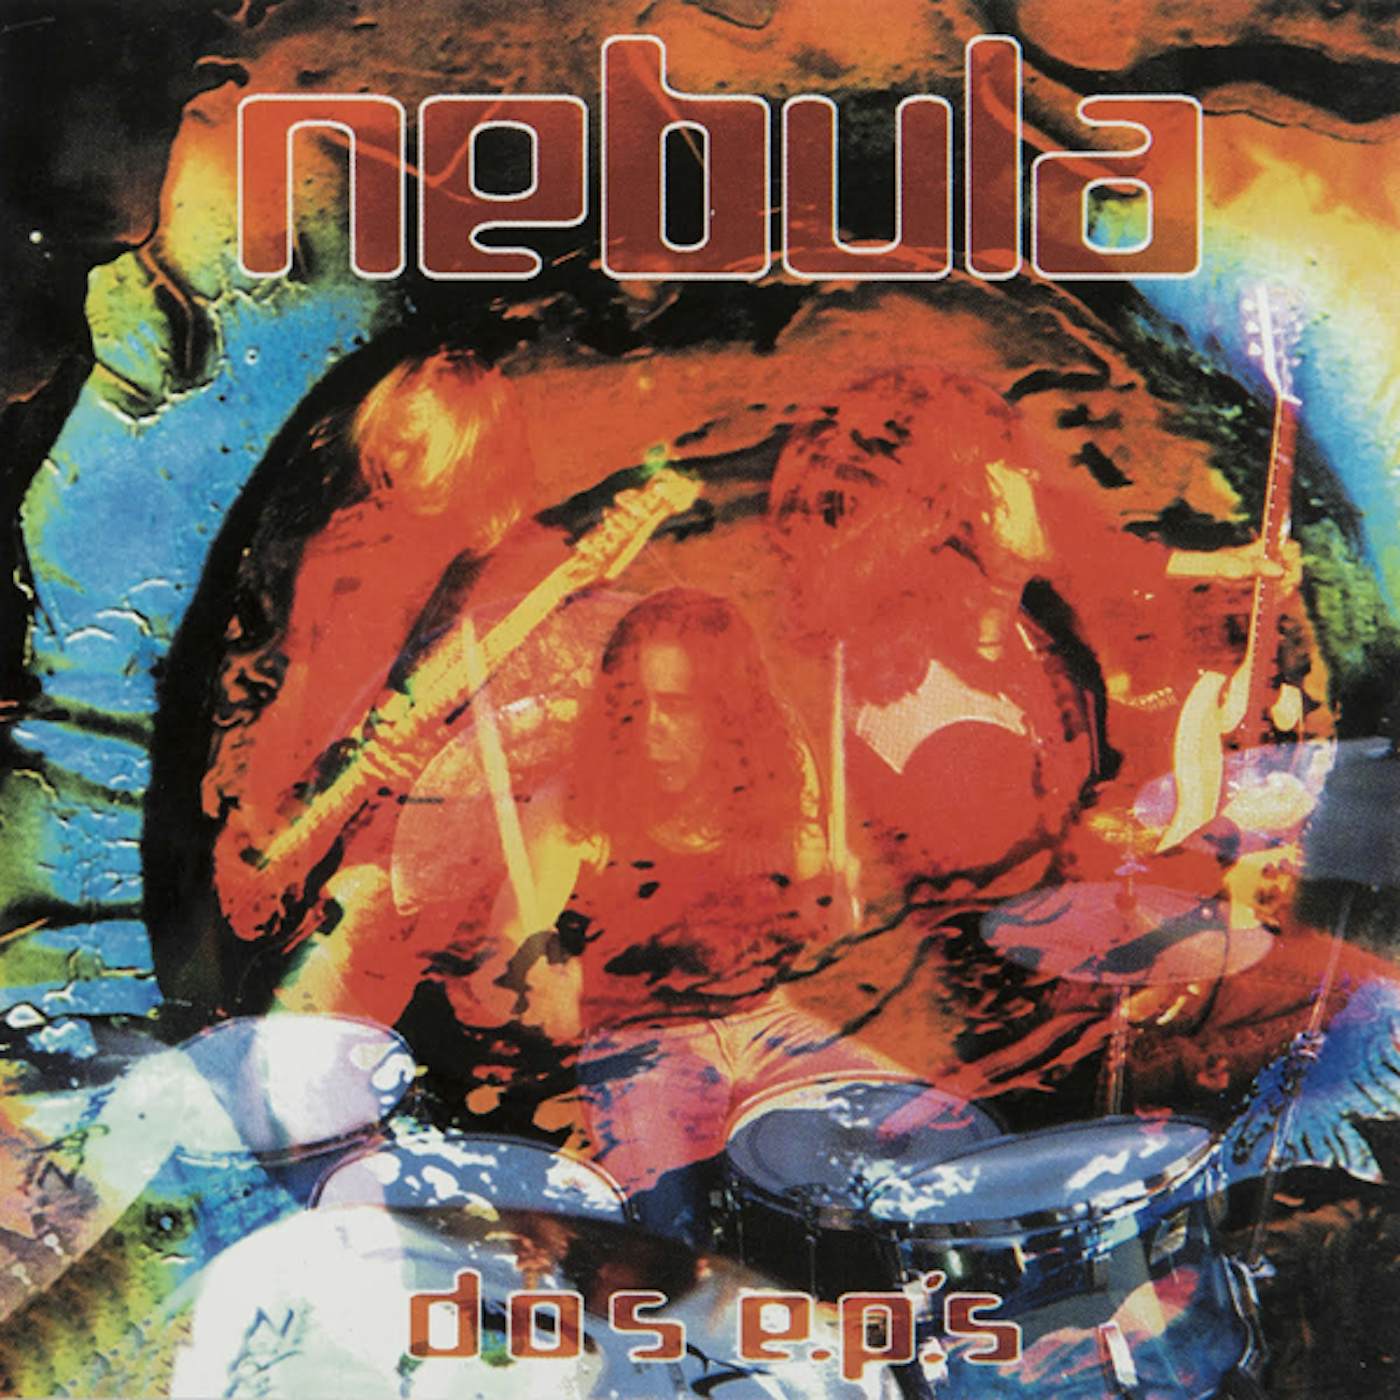 Nebula Dos Eps Vinyl Record